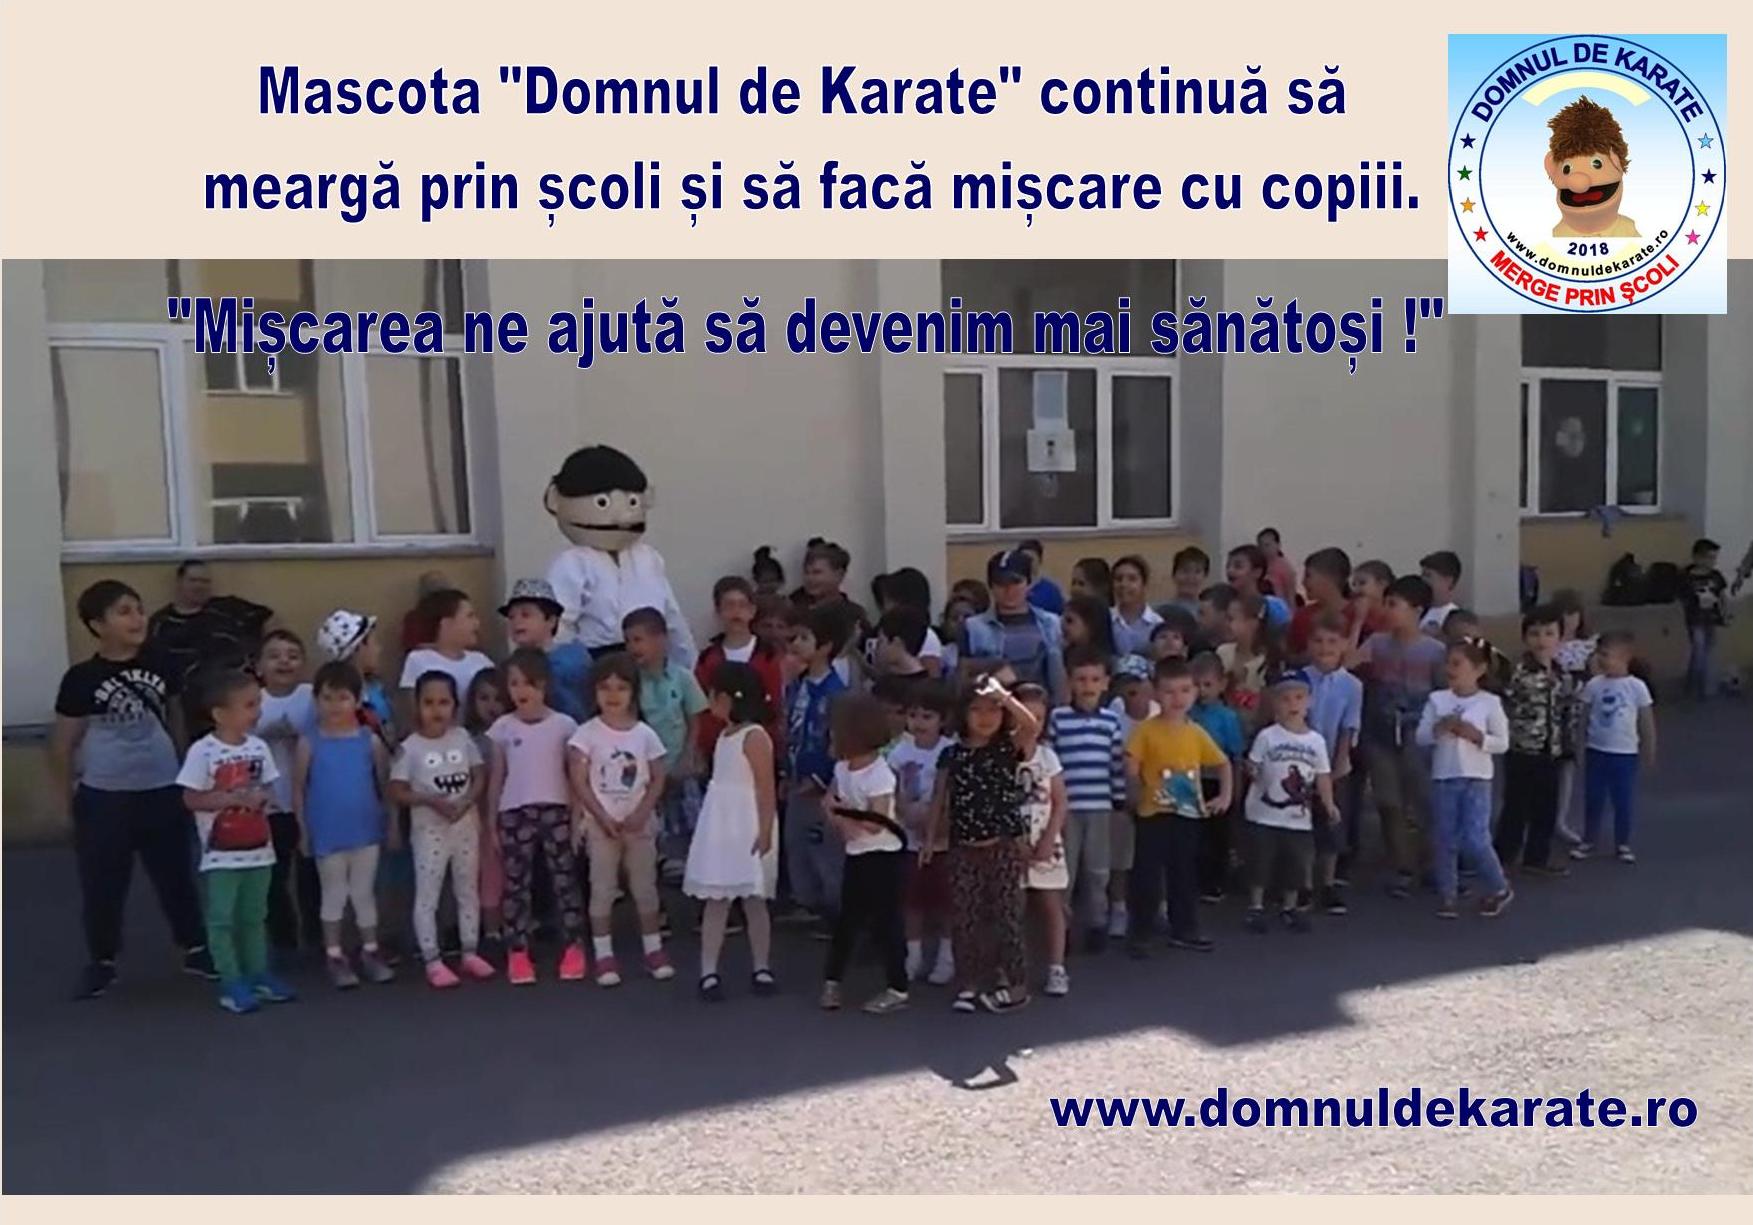 Mascota Domnul de Karate face mișcare cu copiii de la Școala Gimnazială Neagoe Basarab în noiembrie